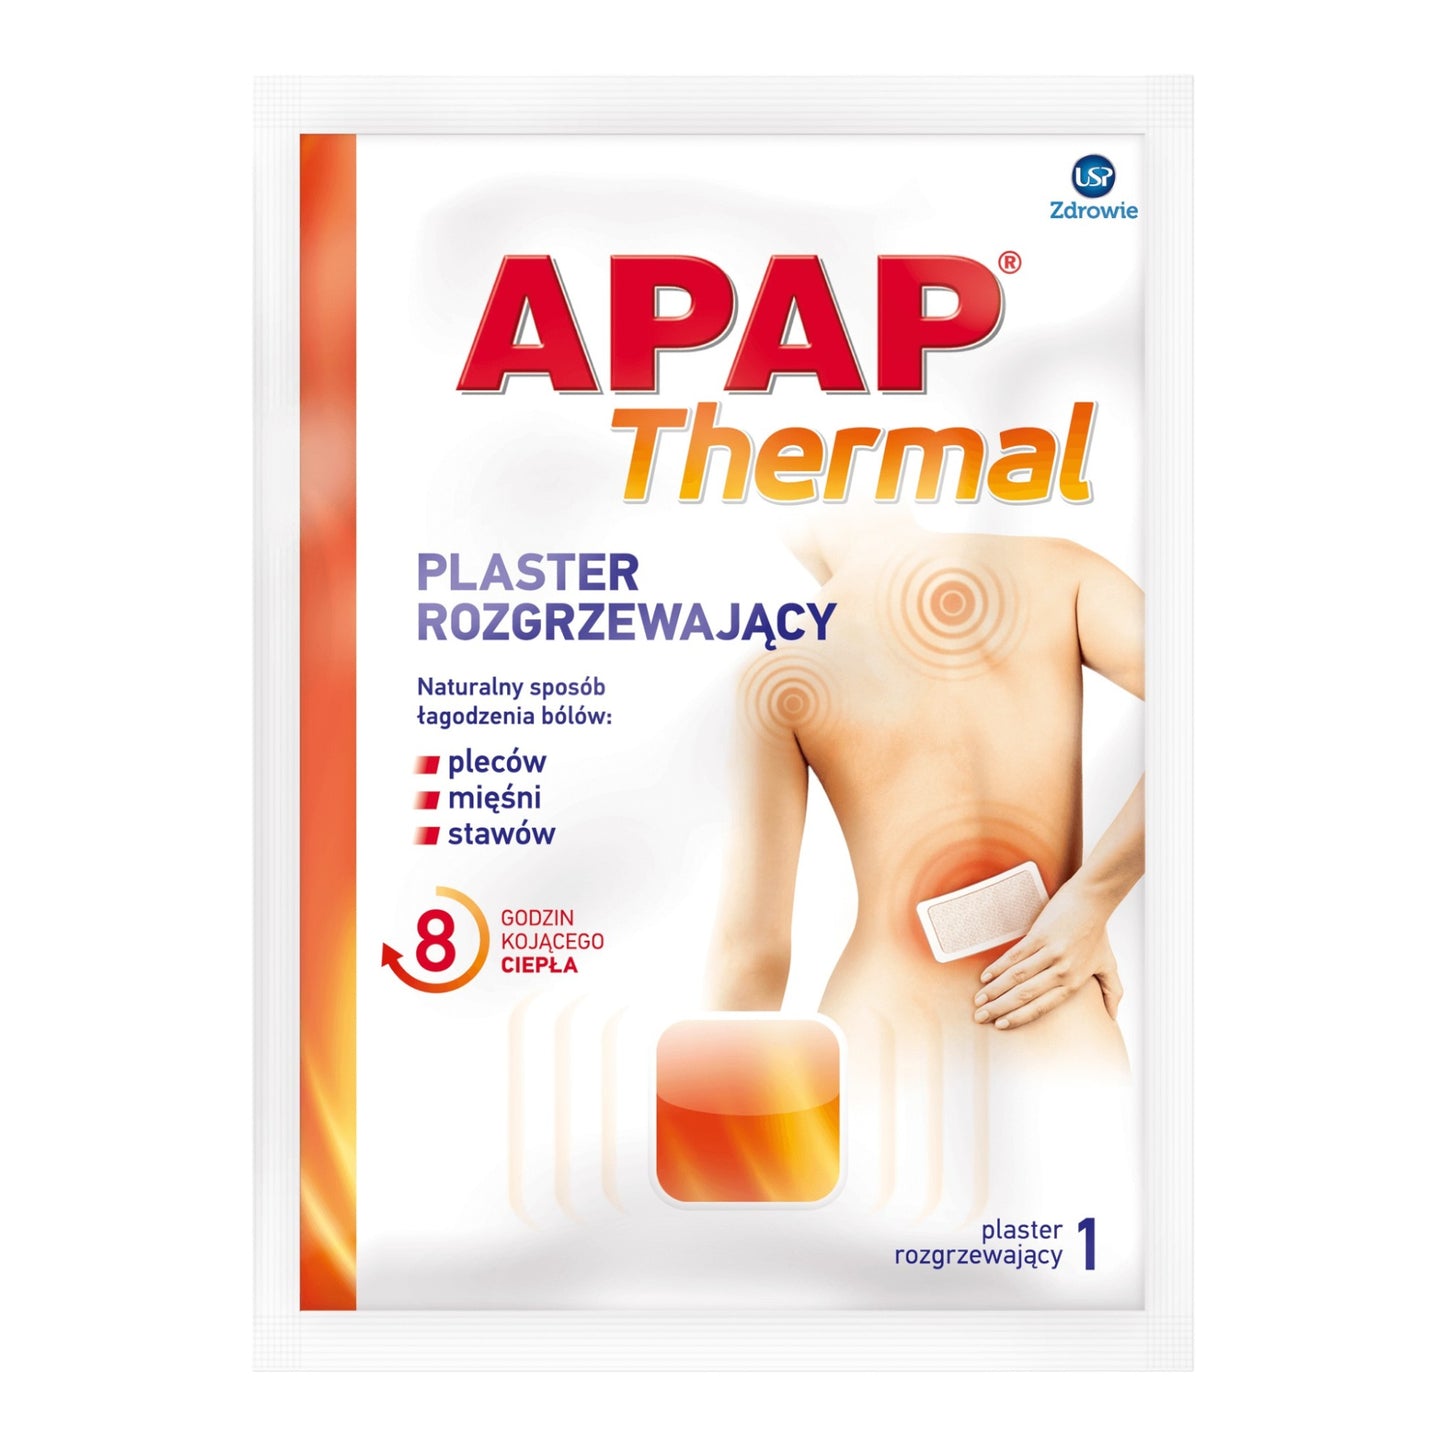 apap thermal plaster rozgrzewajacy